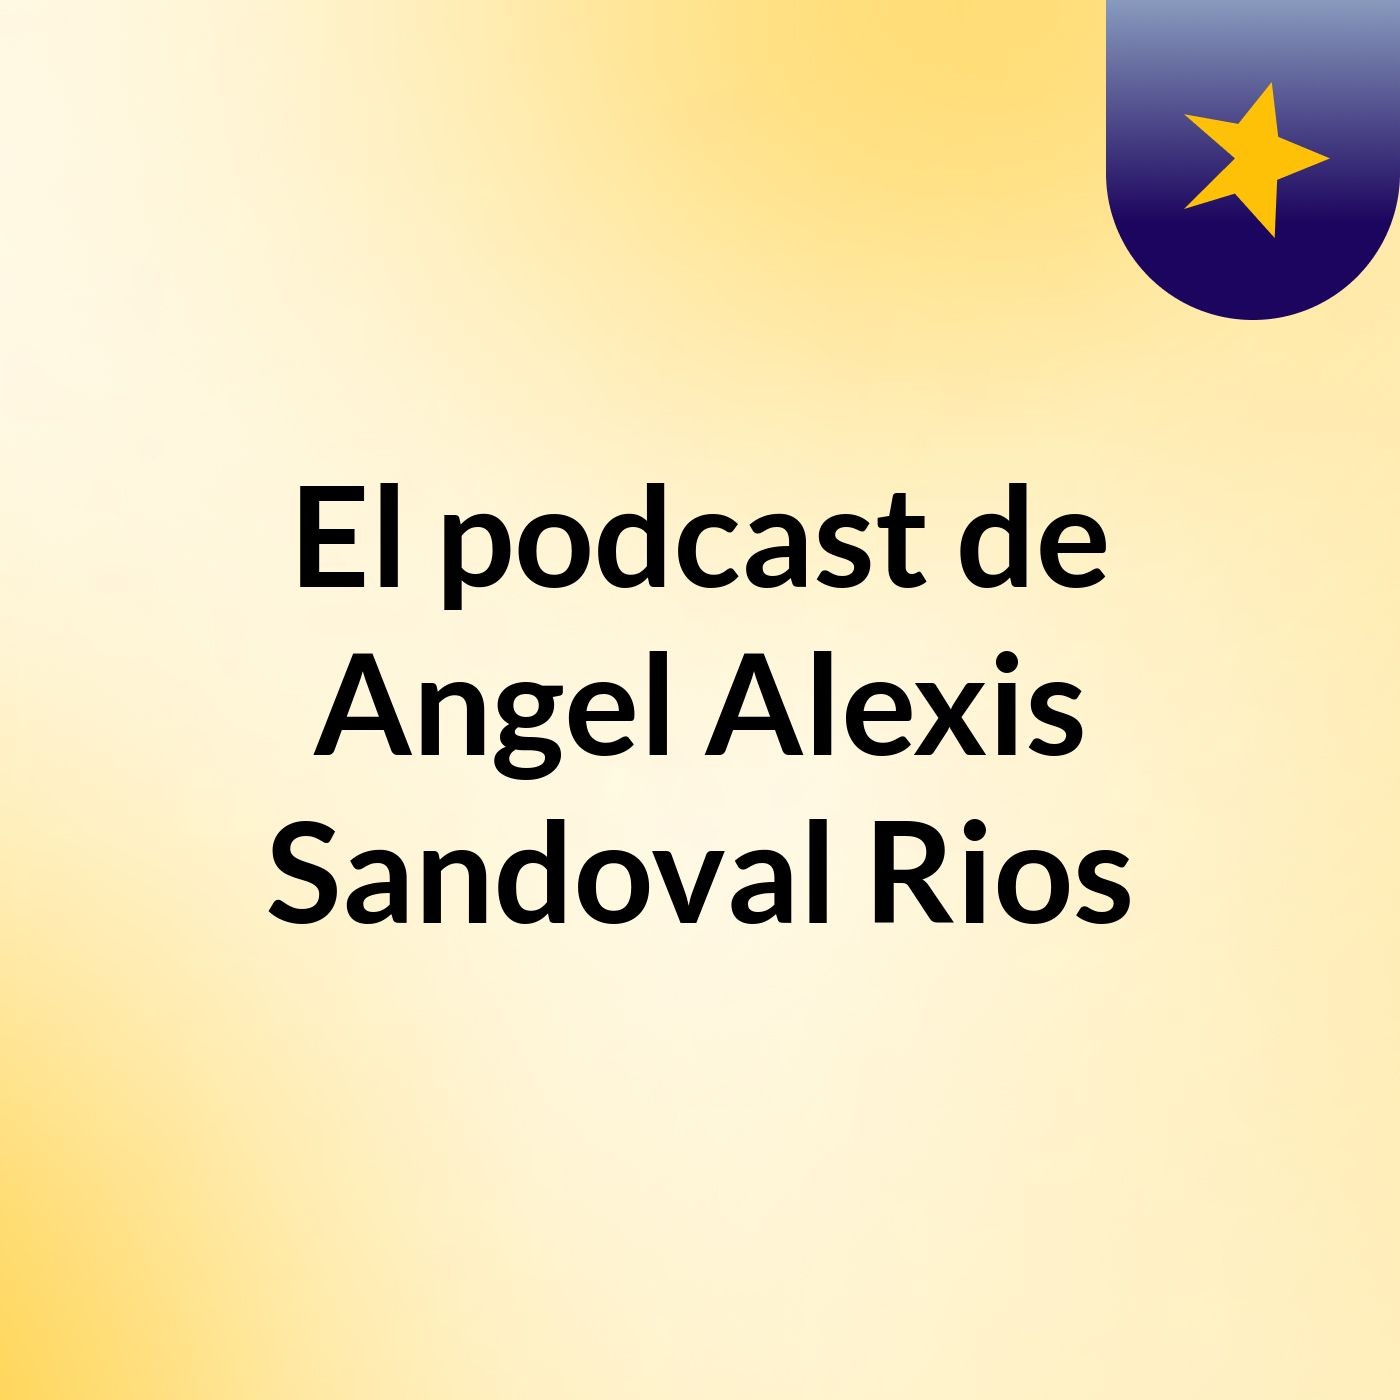 El podcast de Angel Alexis Sandoval Rios